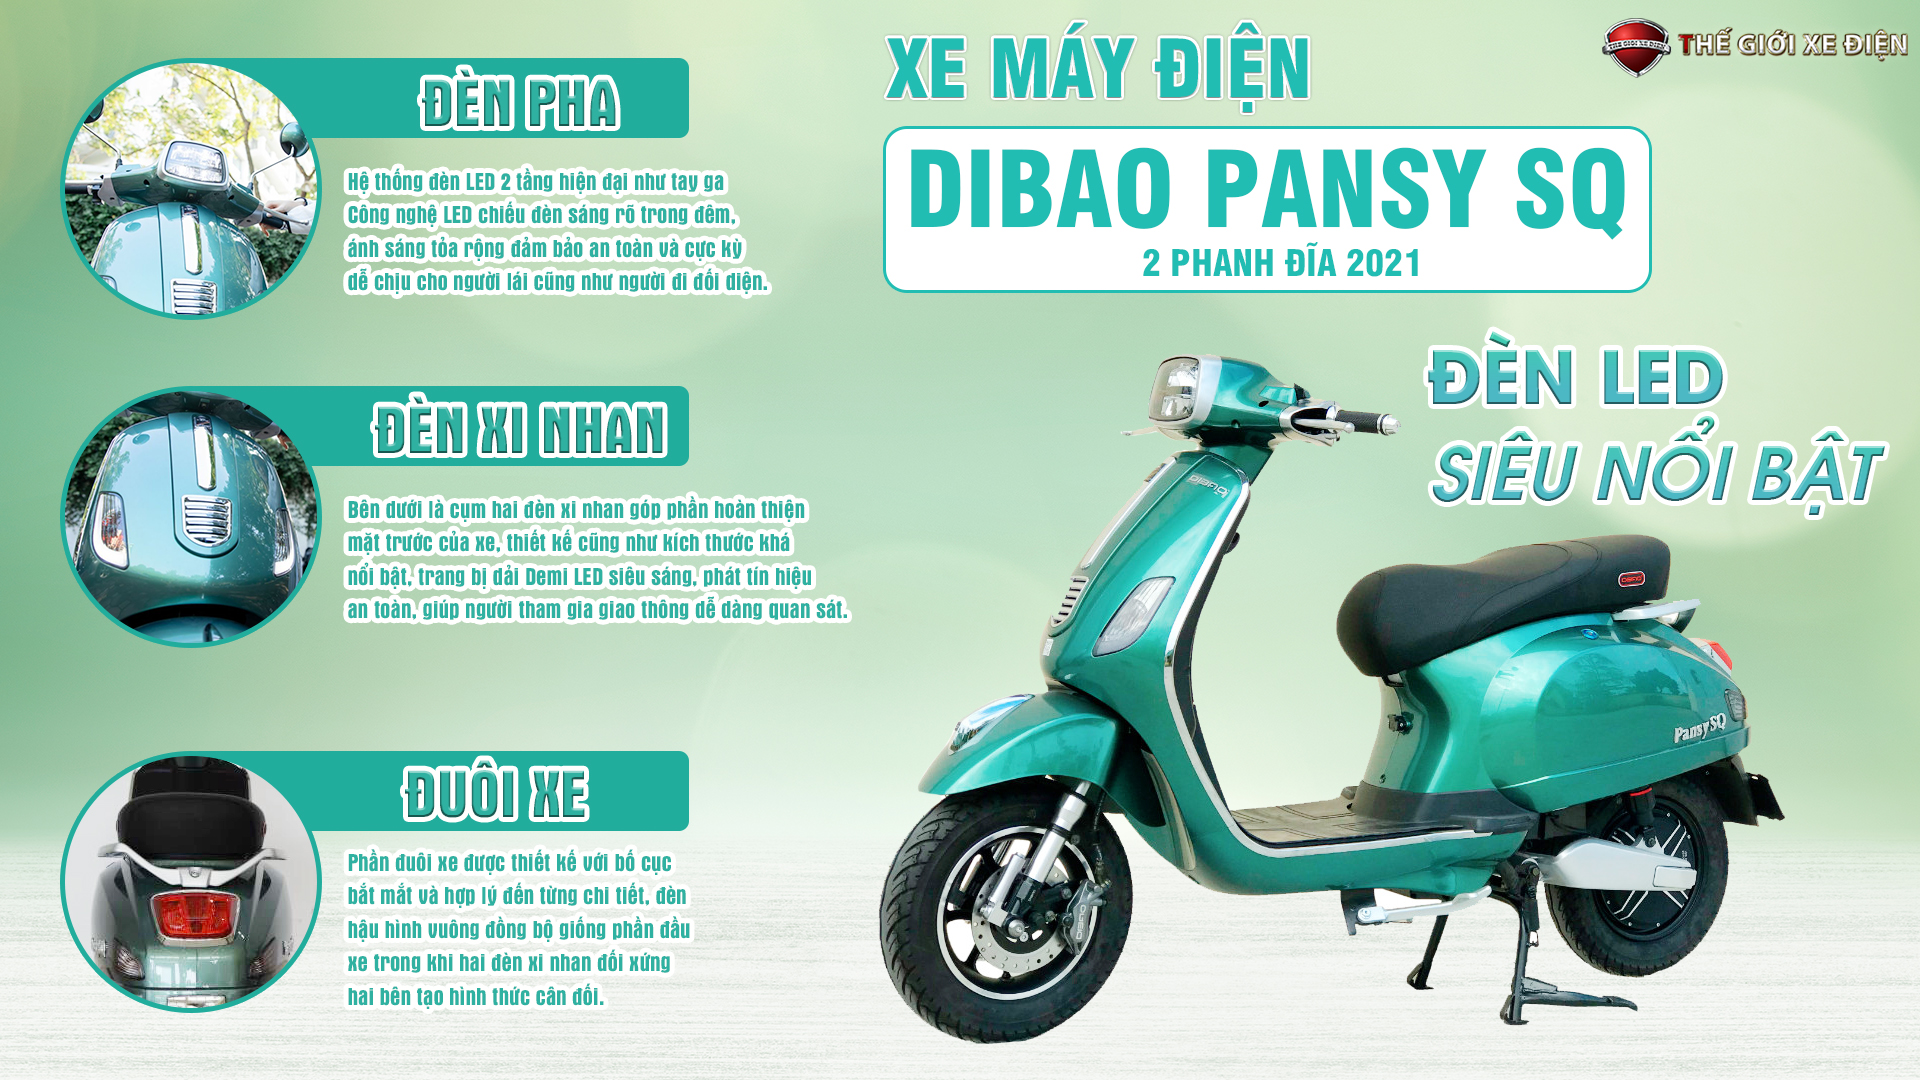  Xe máy điện Dibao Pansy SQ 